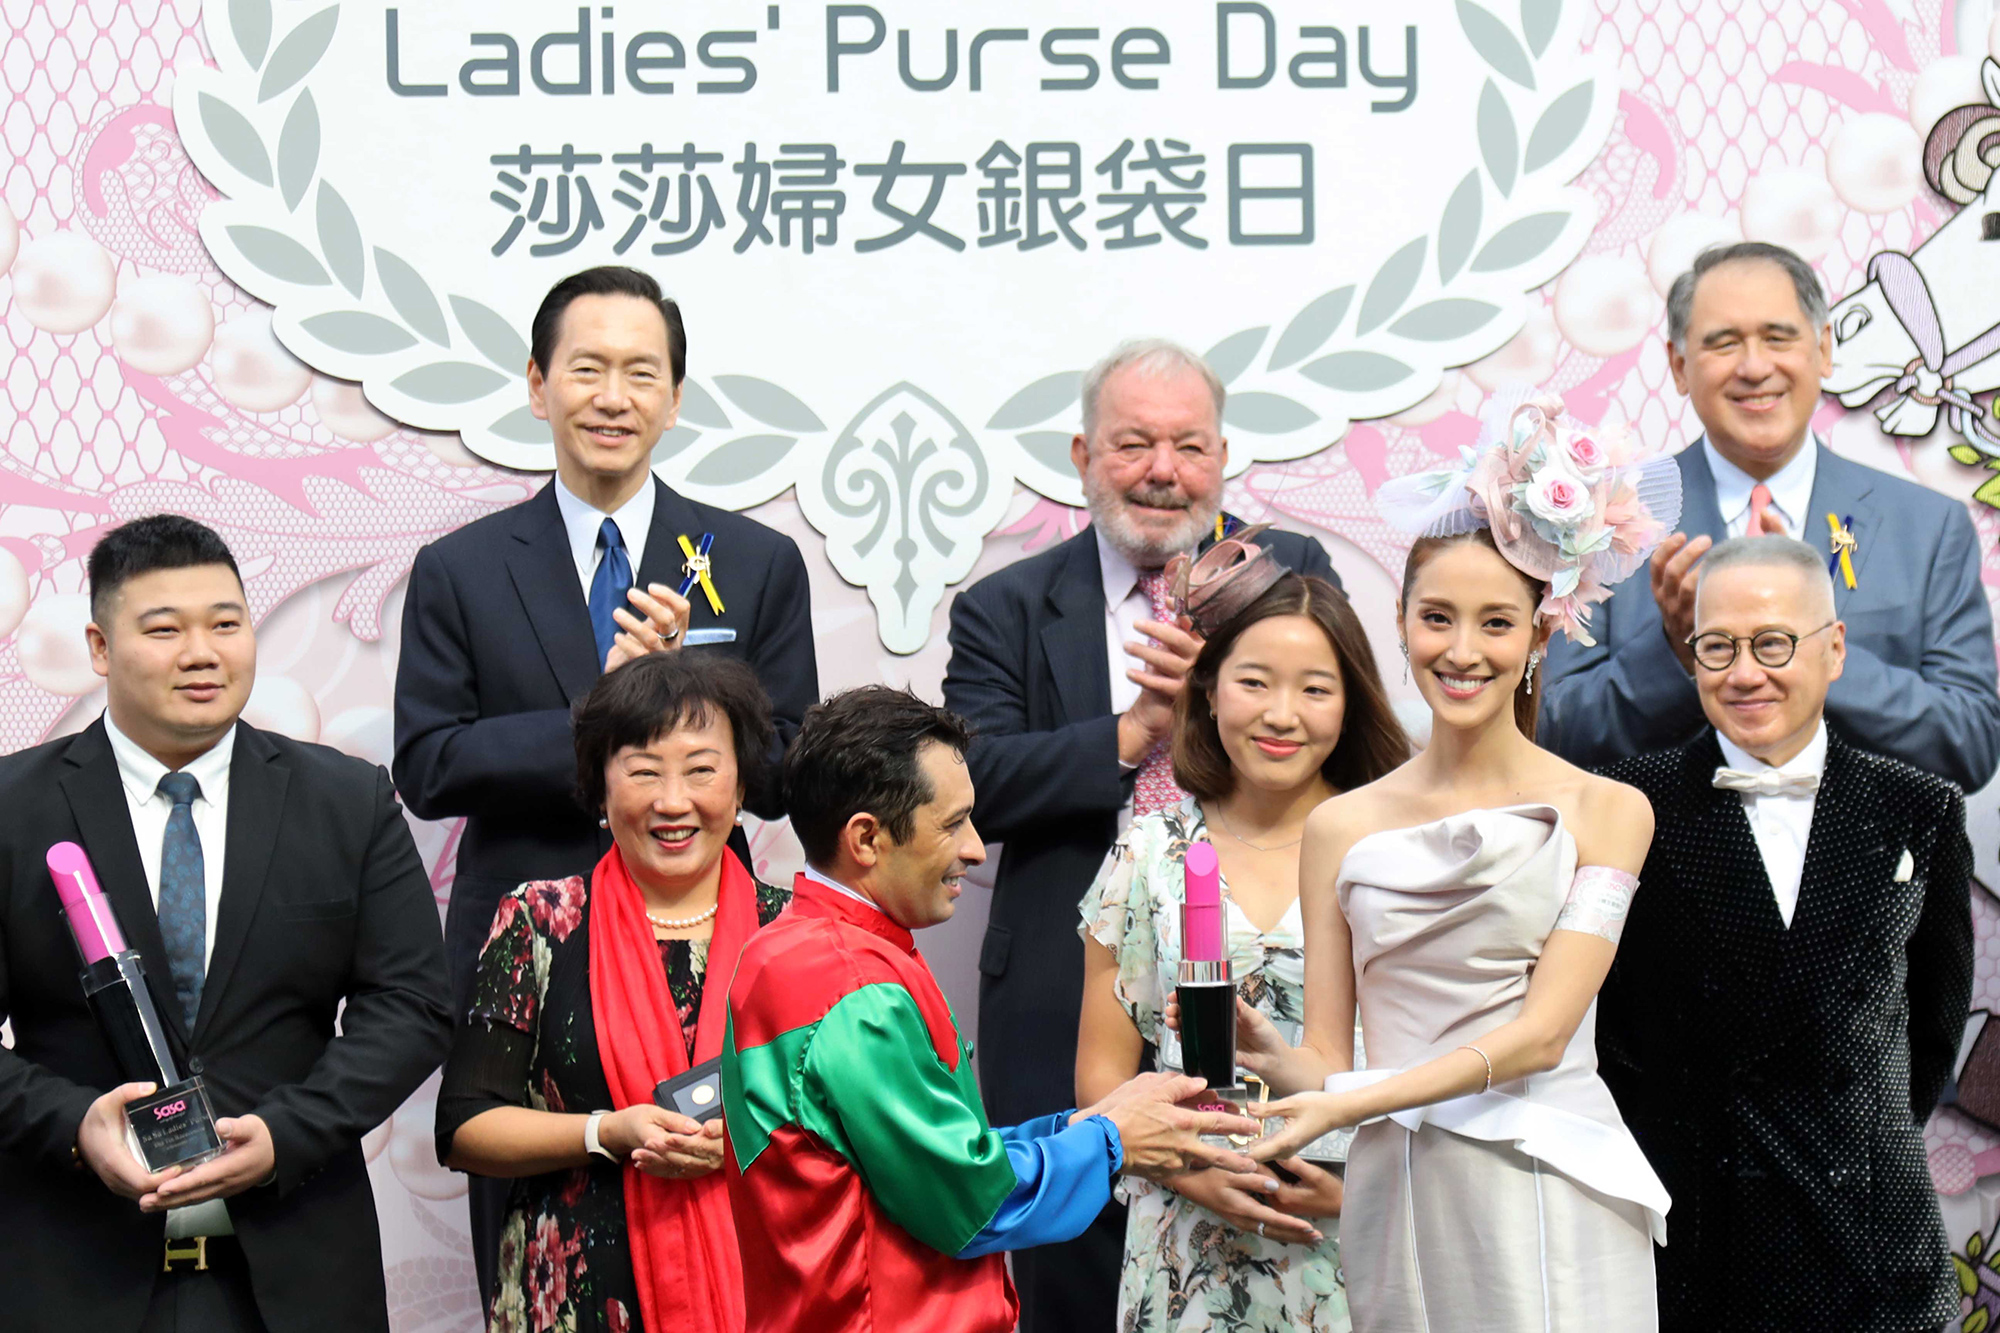 莎莎婦女銀袋日形象大使陳凱琳小姐在莎莎婦女銀袋頒獎儀式上，致送紀念盃予冠軍馬匹「發財先鋒」的騎師蘇兆輝。